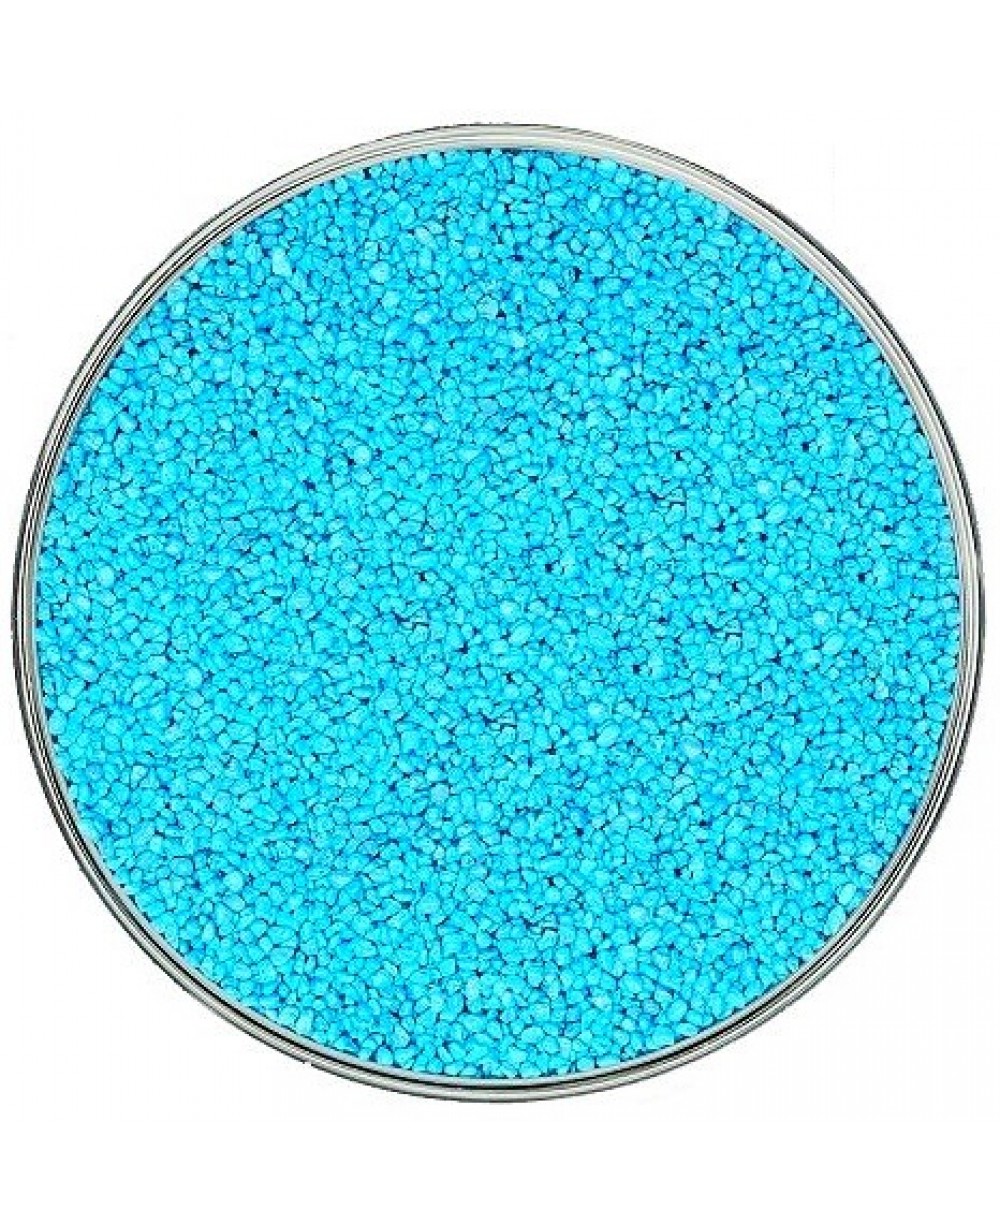 Glitter pigment. Цветной кварцевый песок. Бирюзовый глиттер. Бирюзовые блестки. Глиттер голубой.